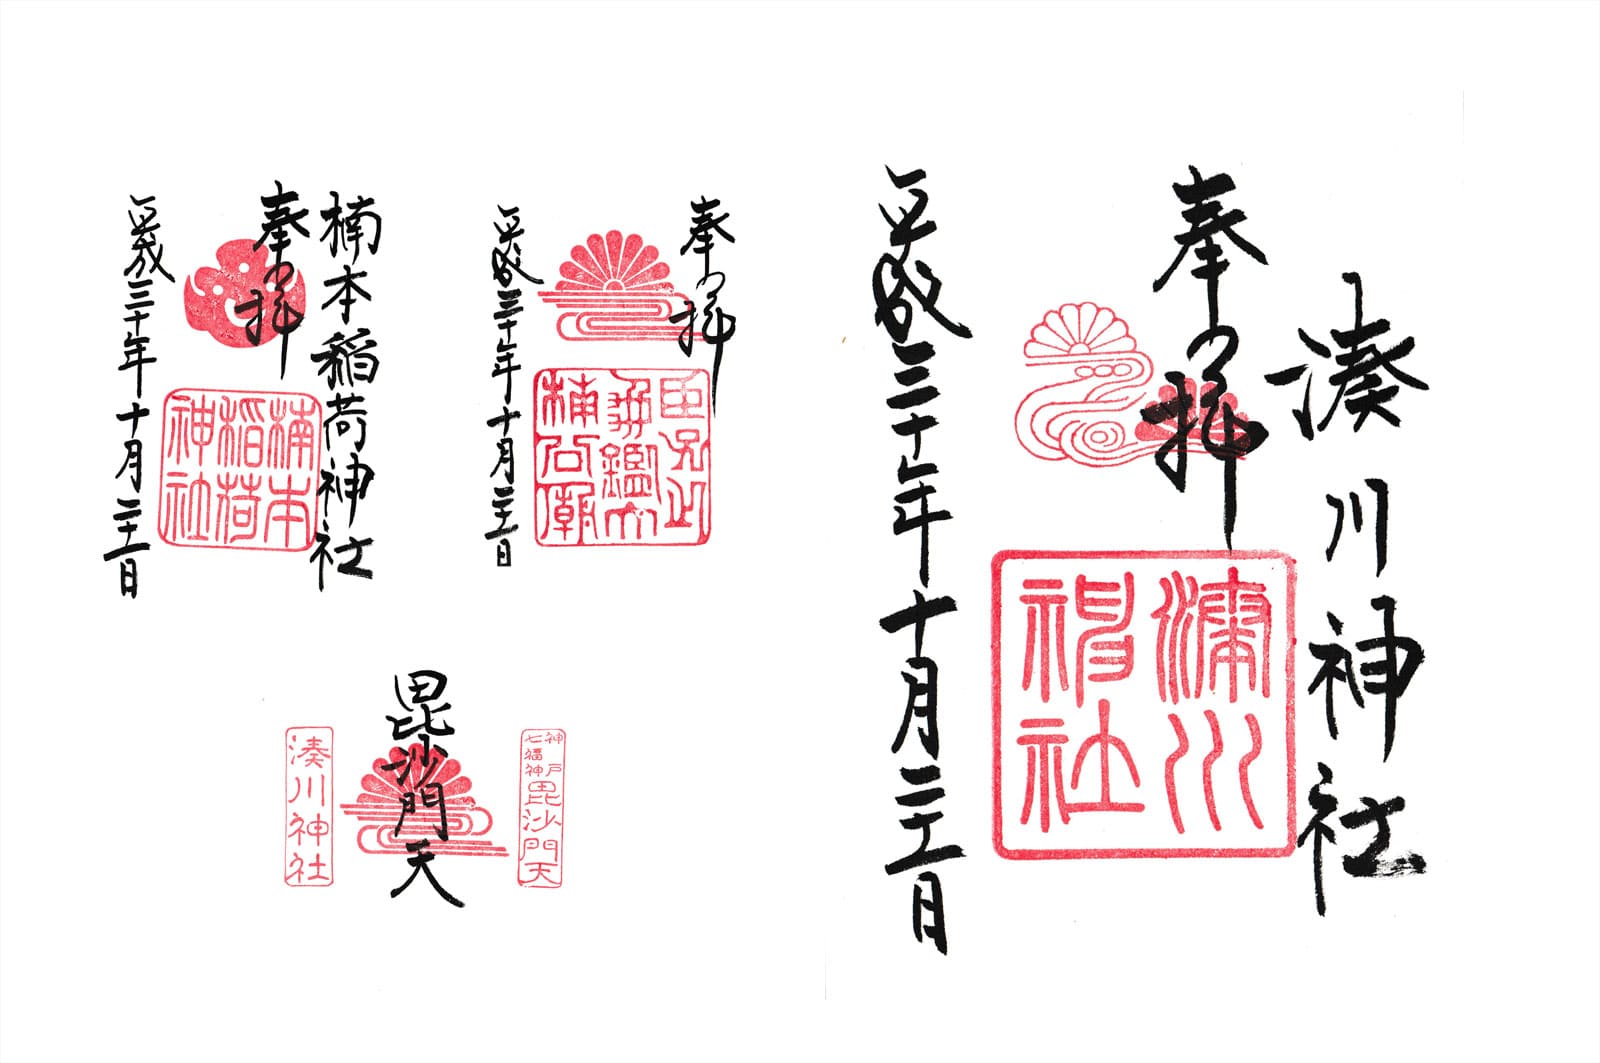 湊川神社では4種類の御朱印がいただけます。